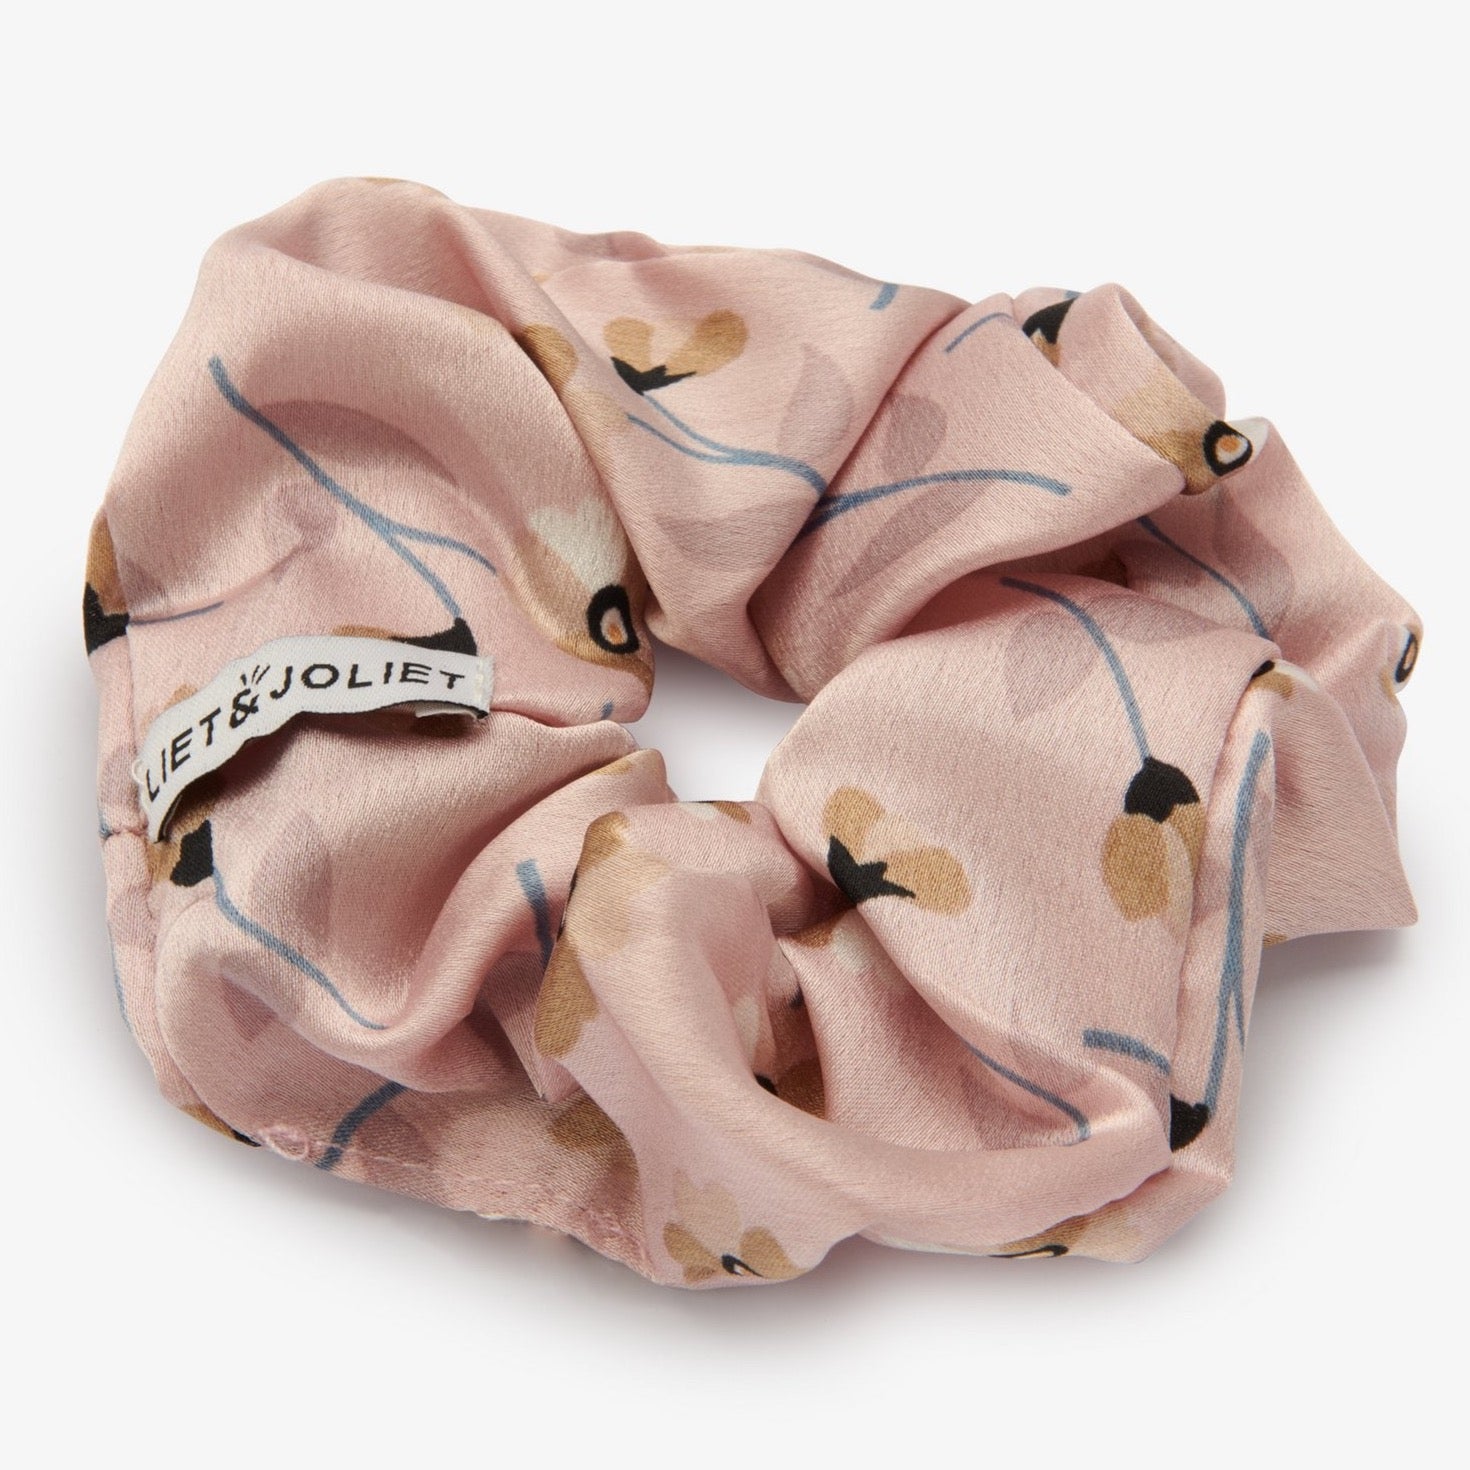 Tover je bad hair day om met deze mooie elegante scrunchie van Liet&Joliet.   De scrunchie is gemaakt van polyester en heeft een diameter van ongeveer 13cm. De stof heeft een satijn effect in een mauve roze kleur met bloemen.